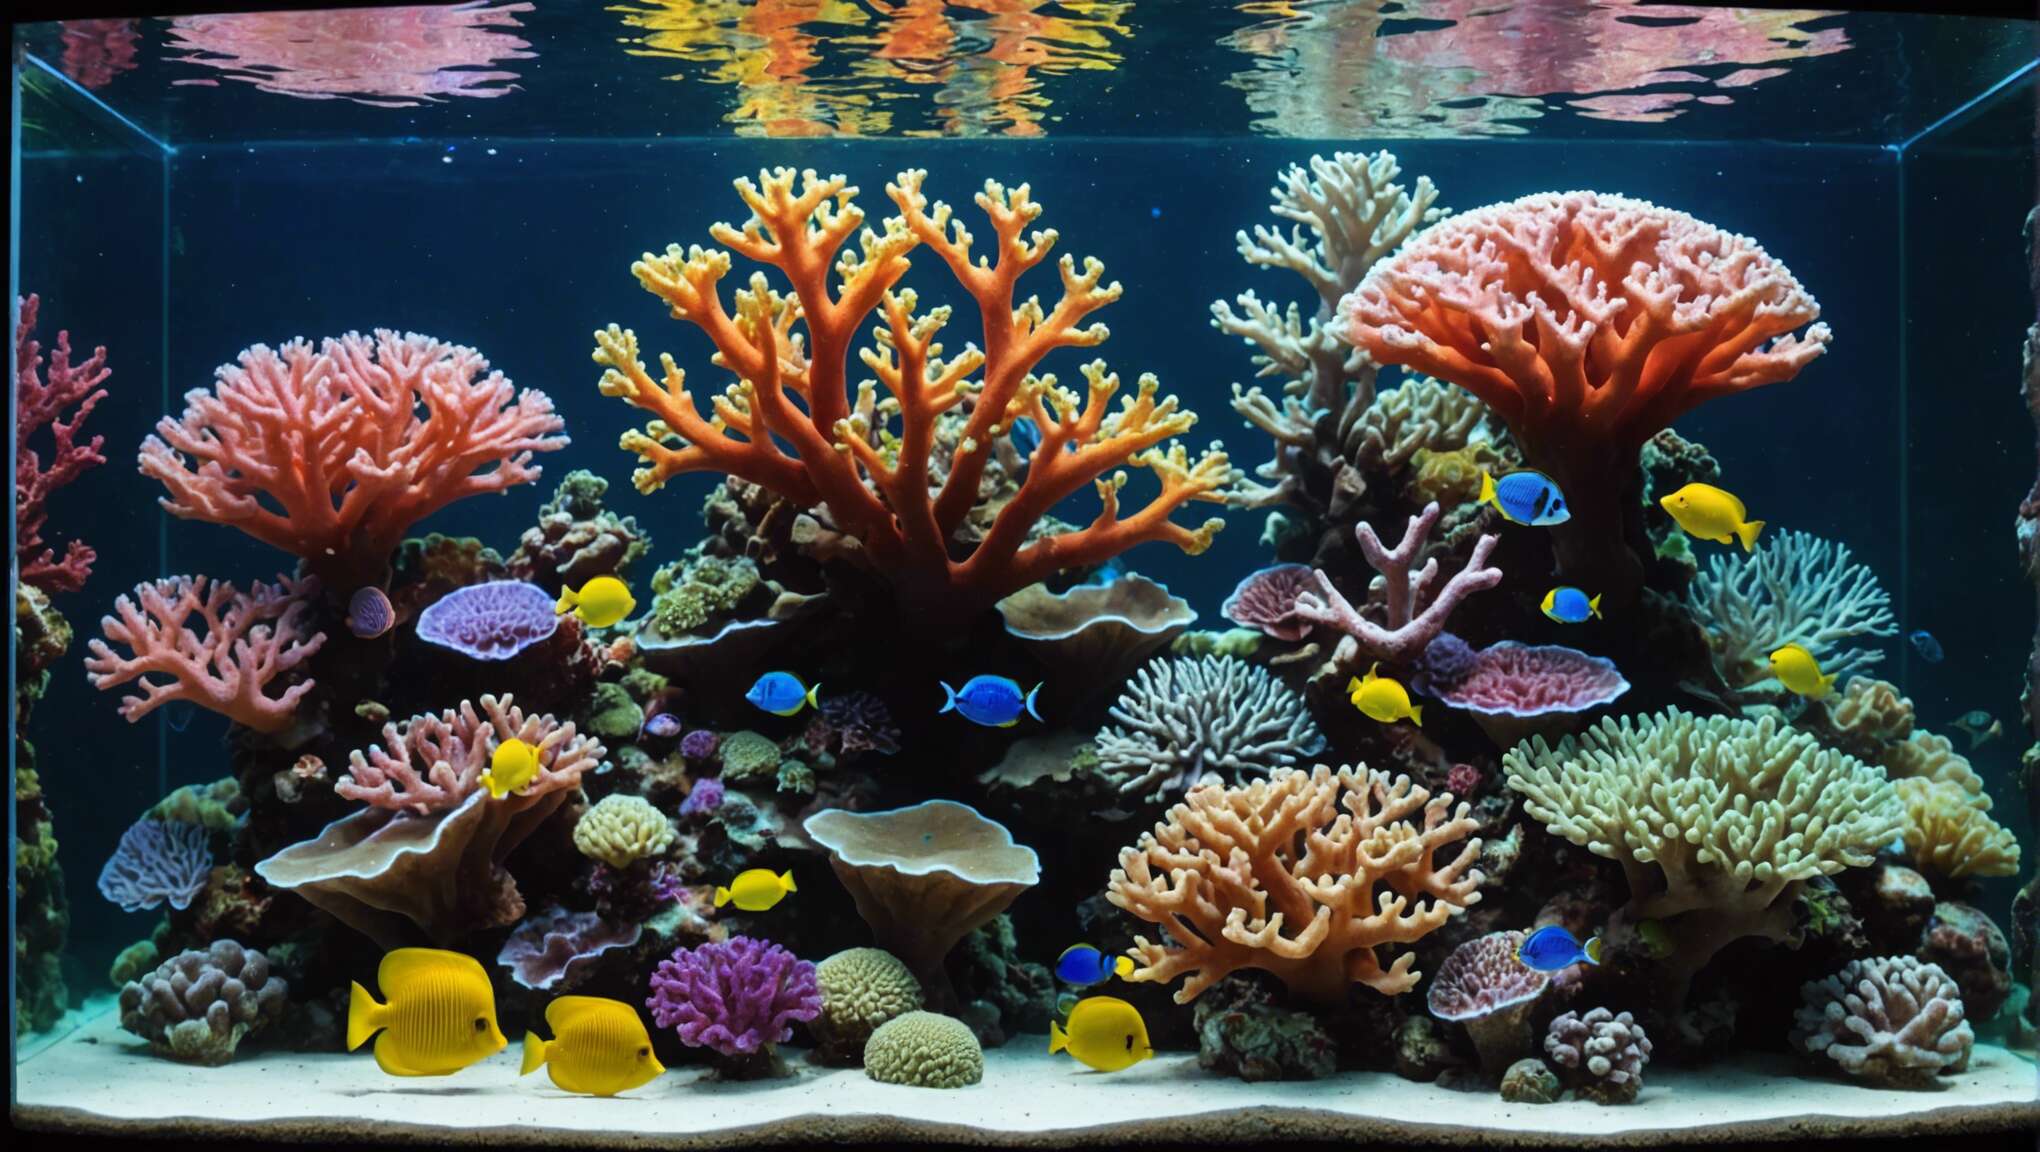 Réussir l'acclimatation des nouveaux coraux : protocole étape par étape